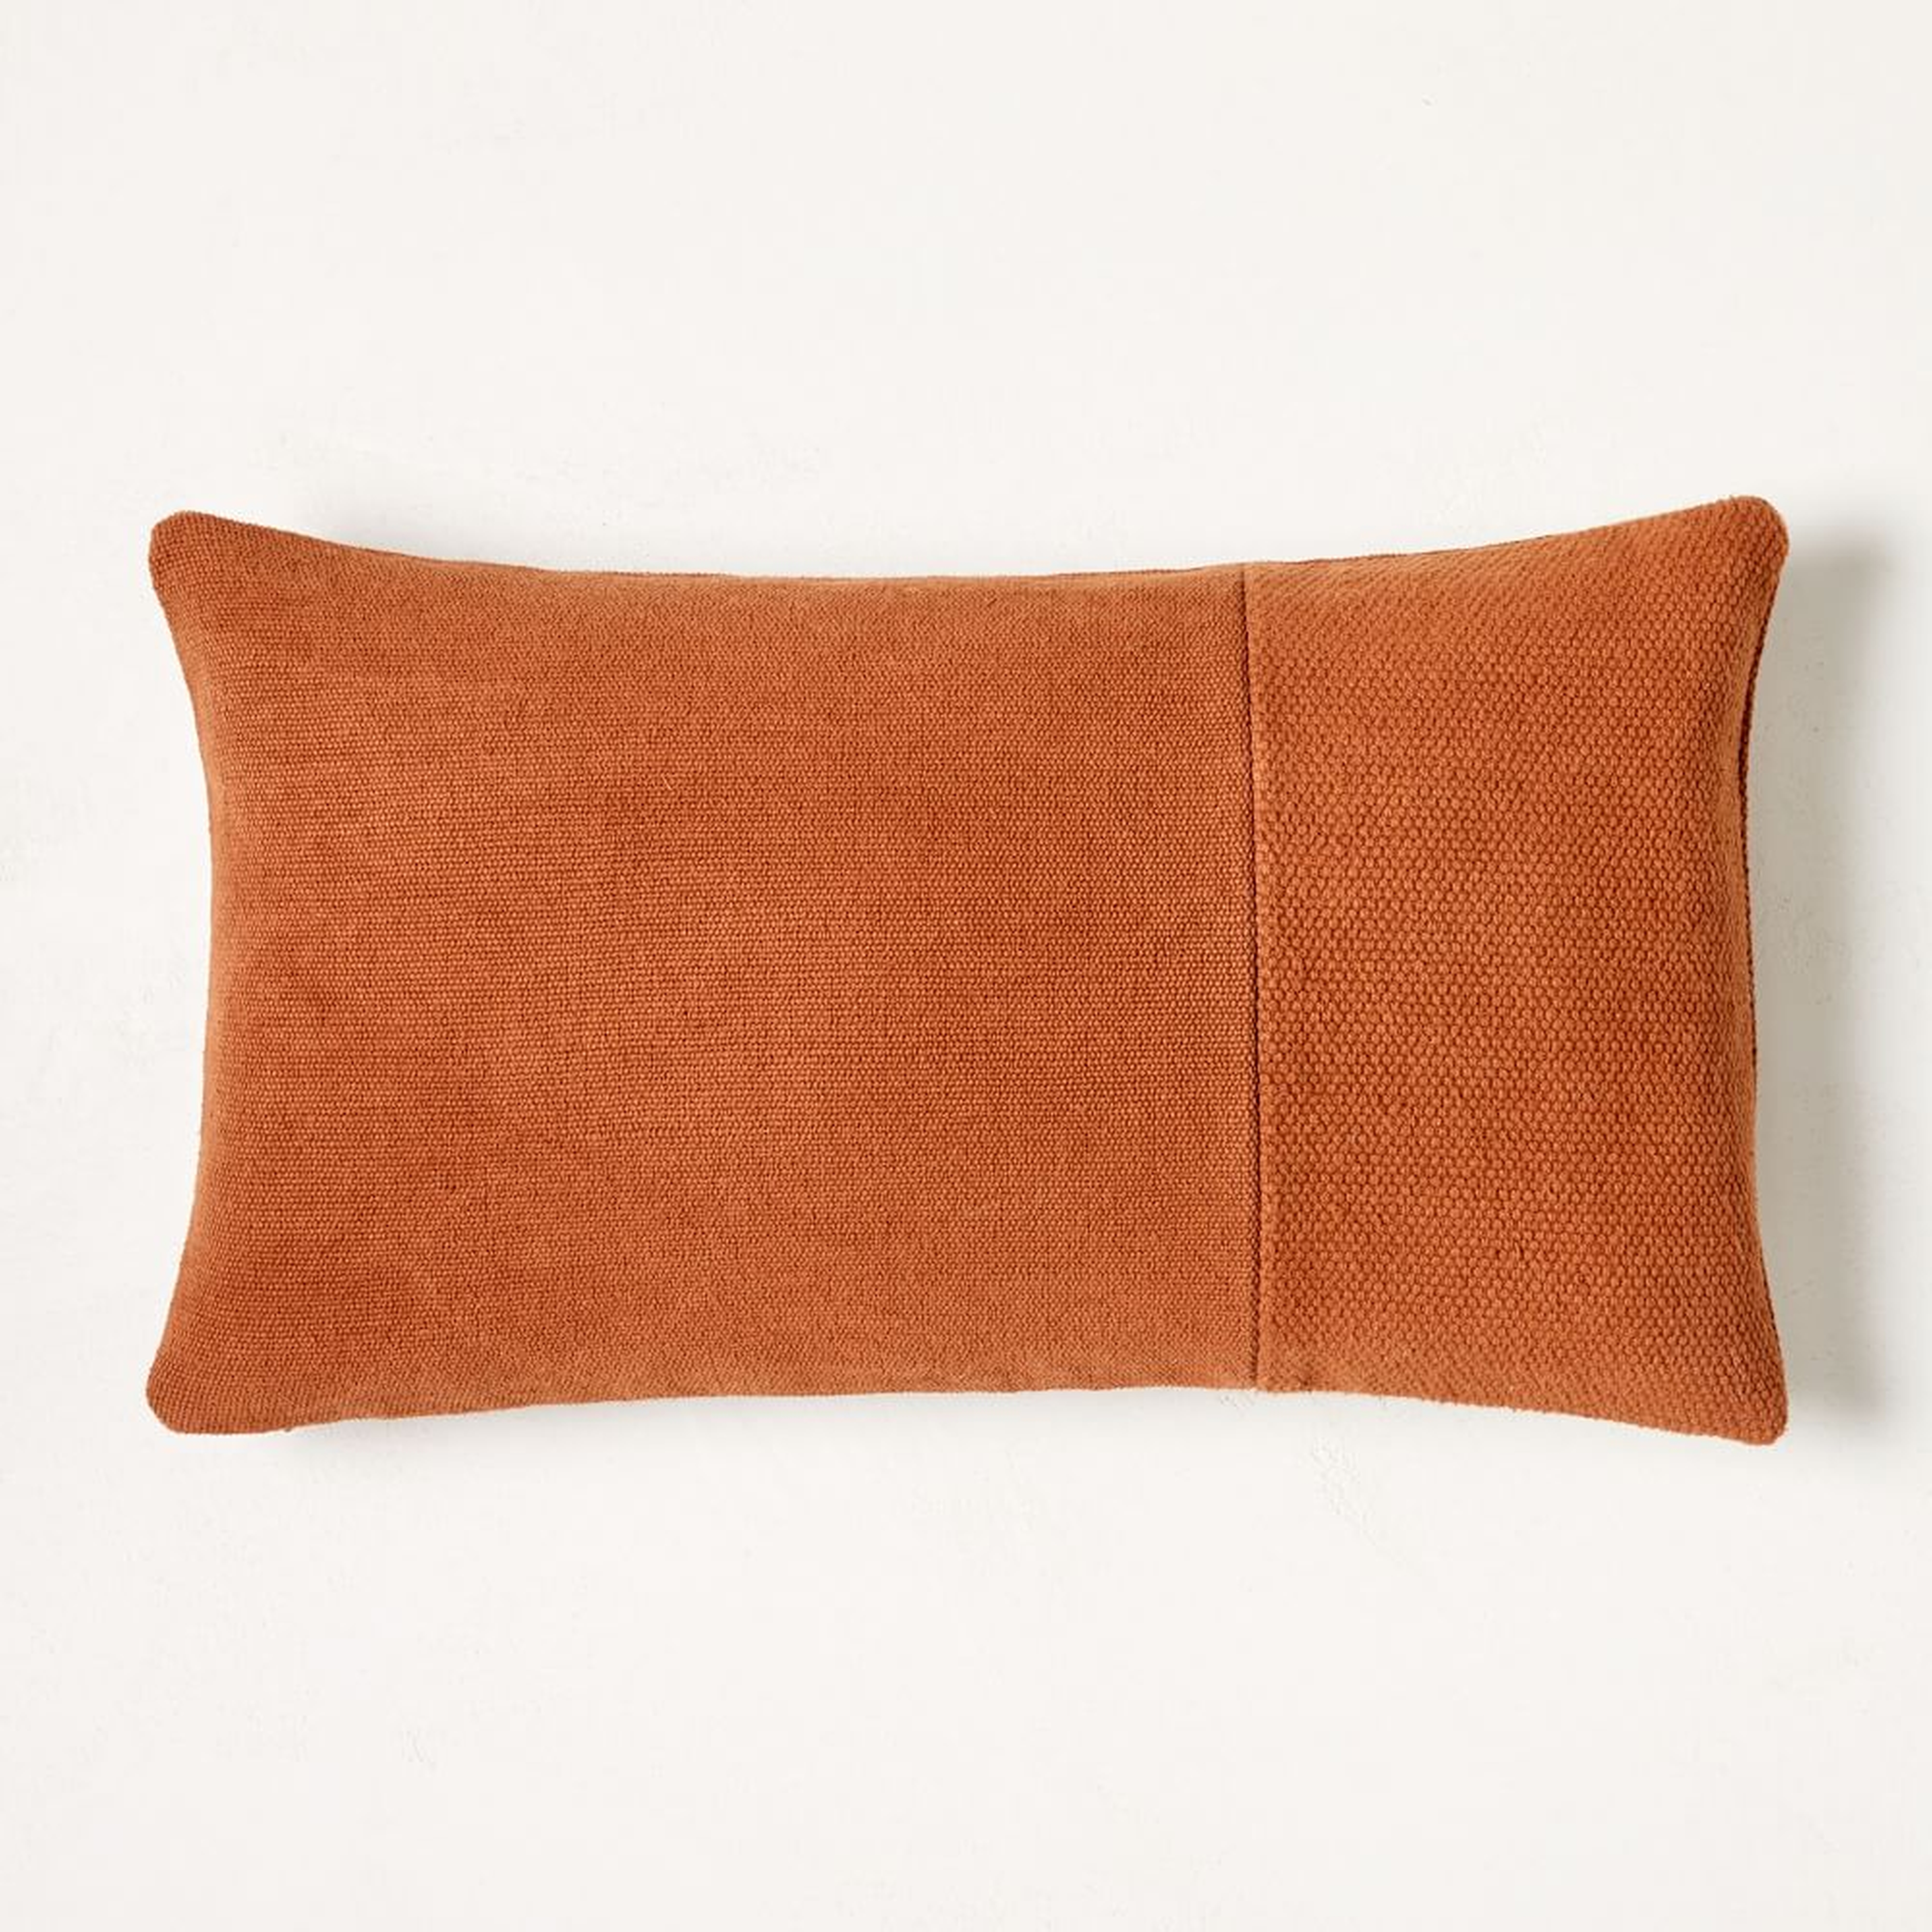 Cotton Canvas Pillow Cover, 12"x21", Copper - West Elm